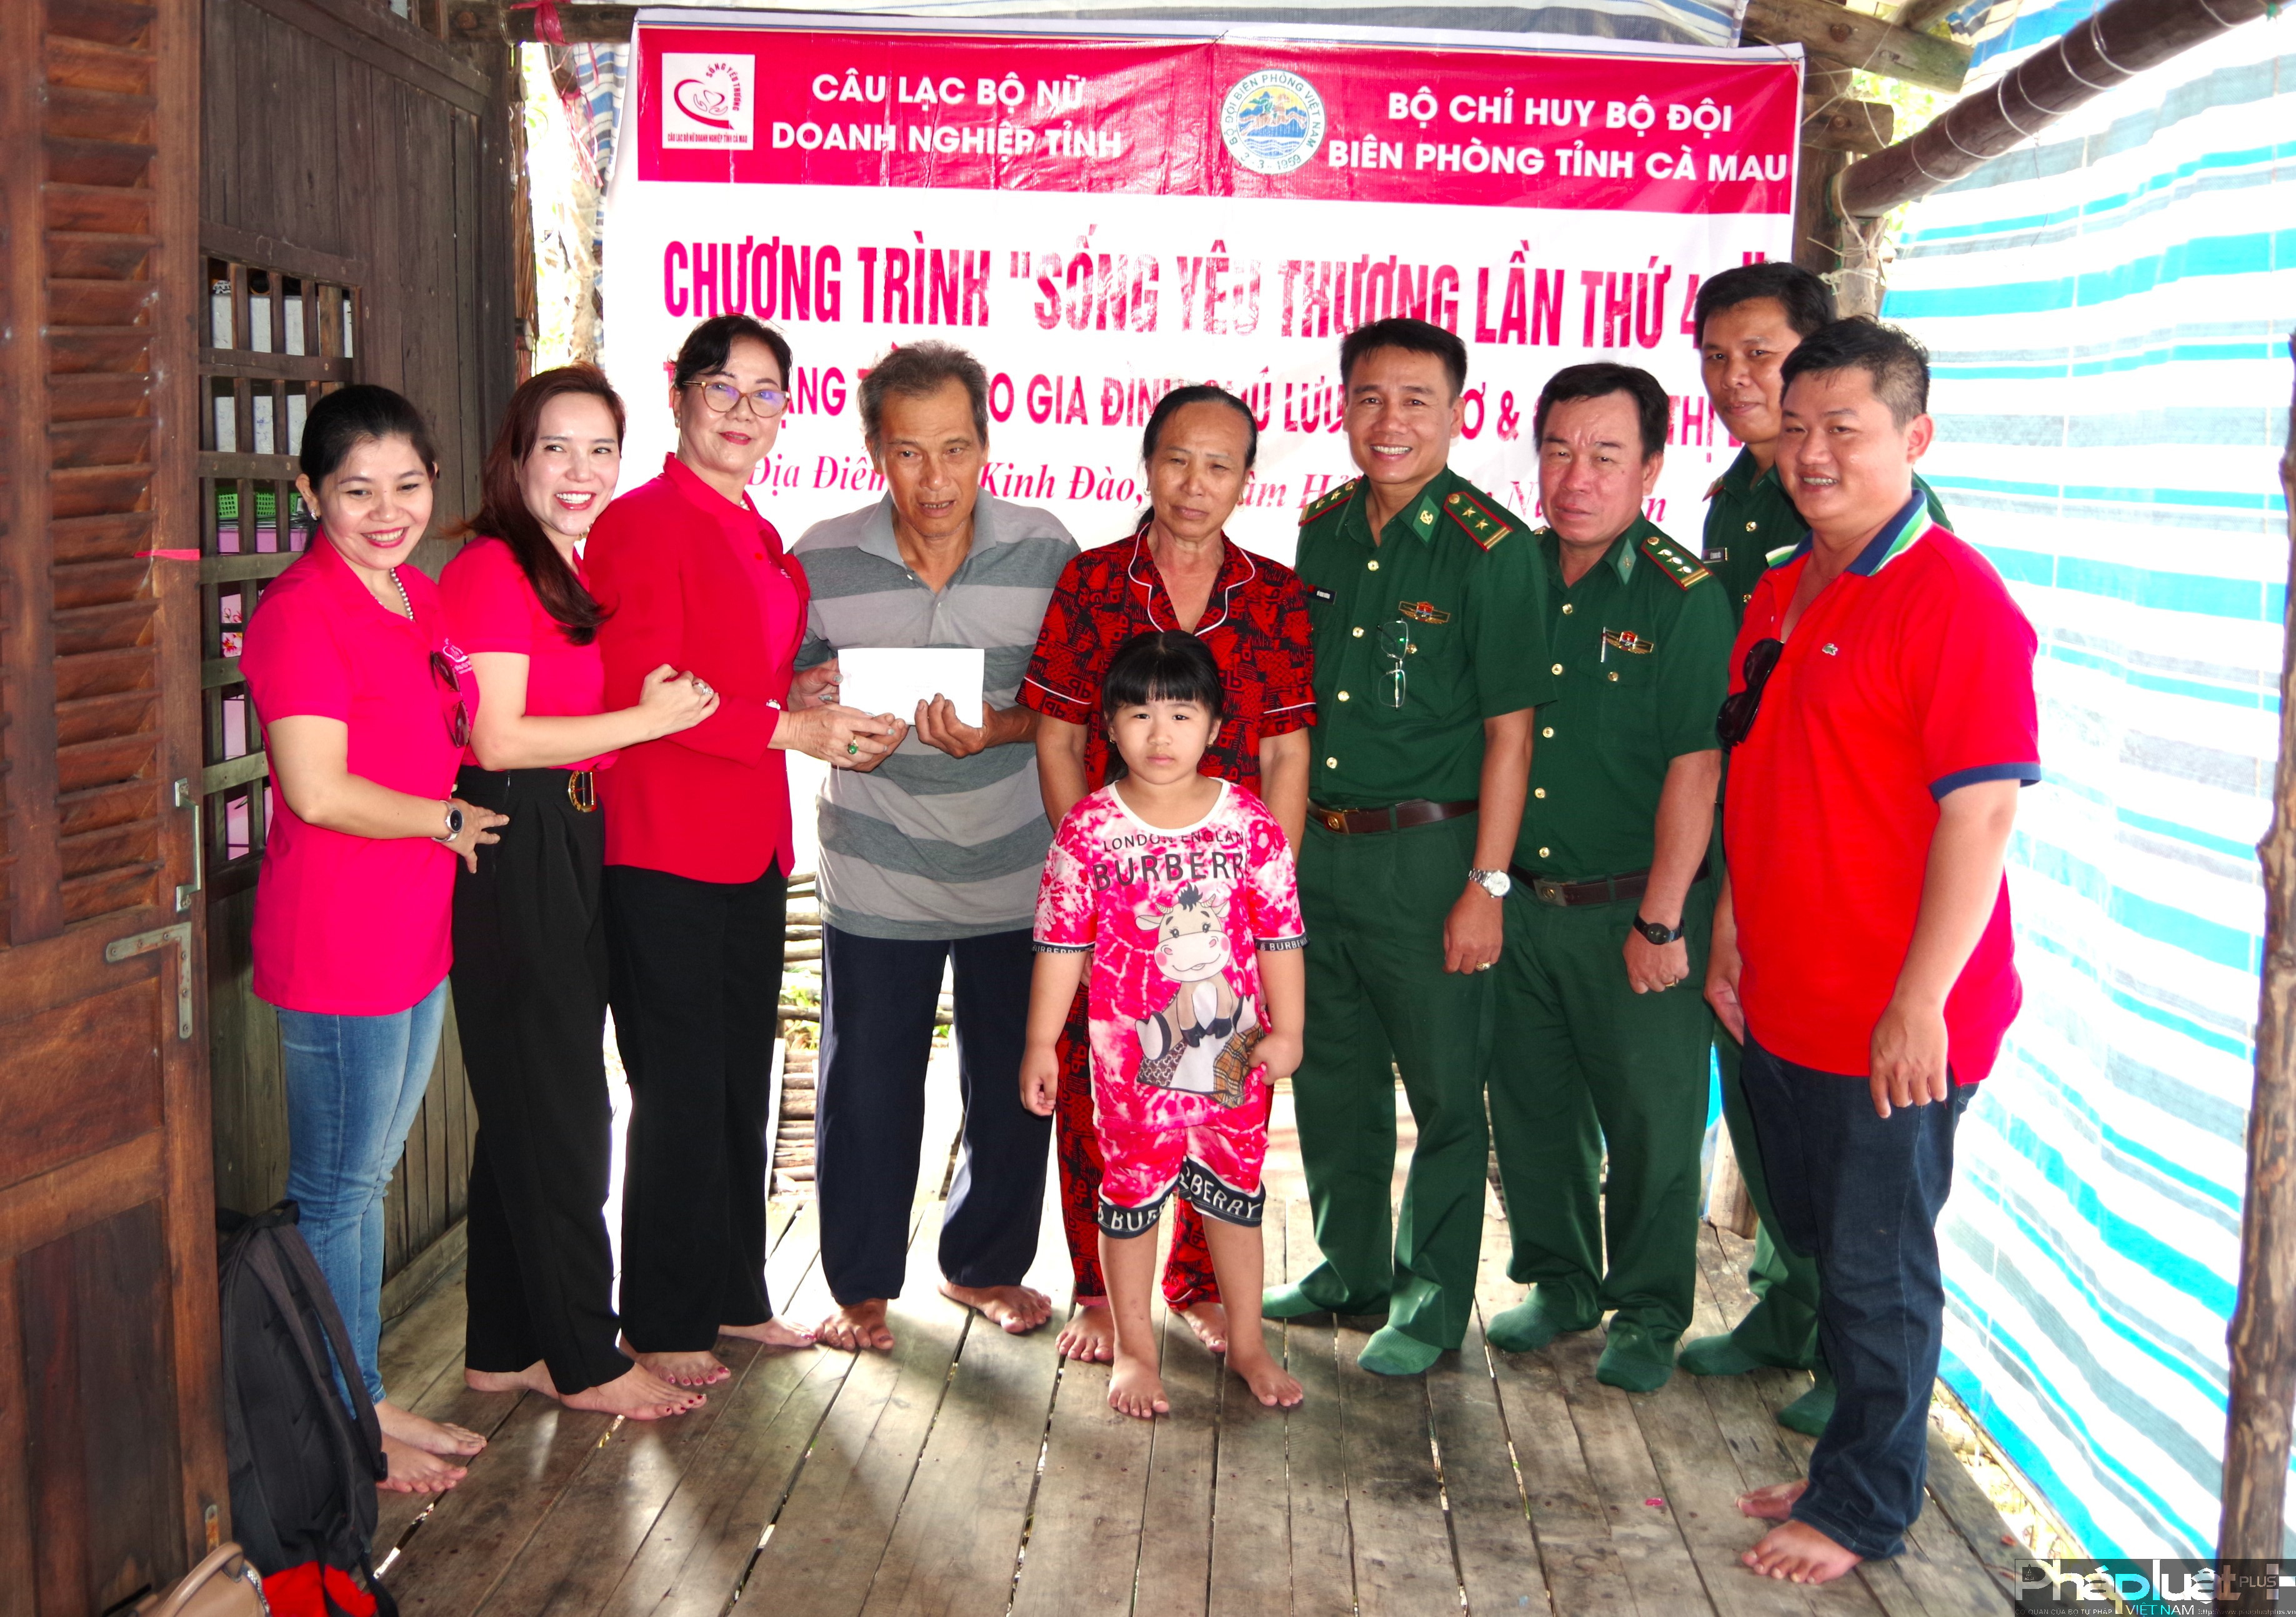 BĐBP và Câu lạc bộ Nữ Doanh nghiệp tỉnh hỗ trợ 60 triệu đồng cho vợ chồng ông Vưu Văn Tơ và bà Võ Thị Lê để xây dựng căn nhà mới